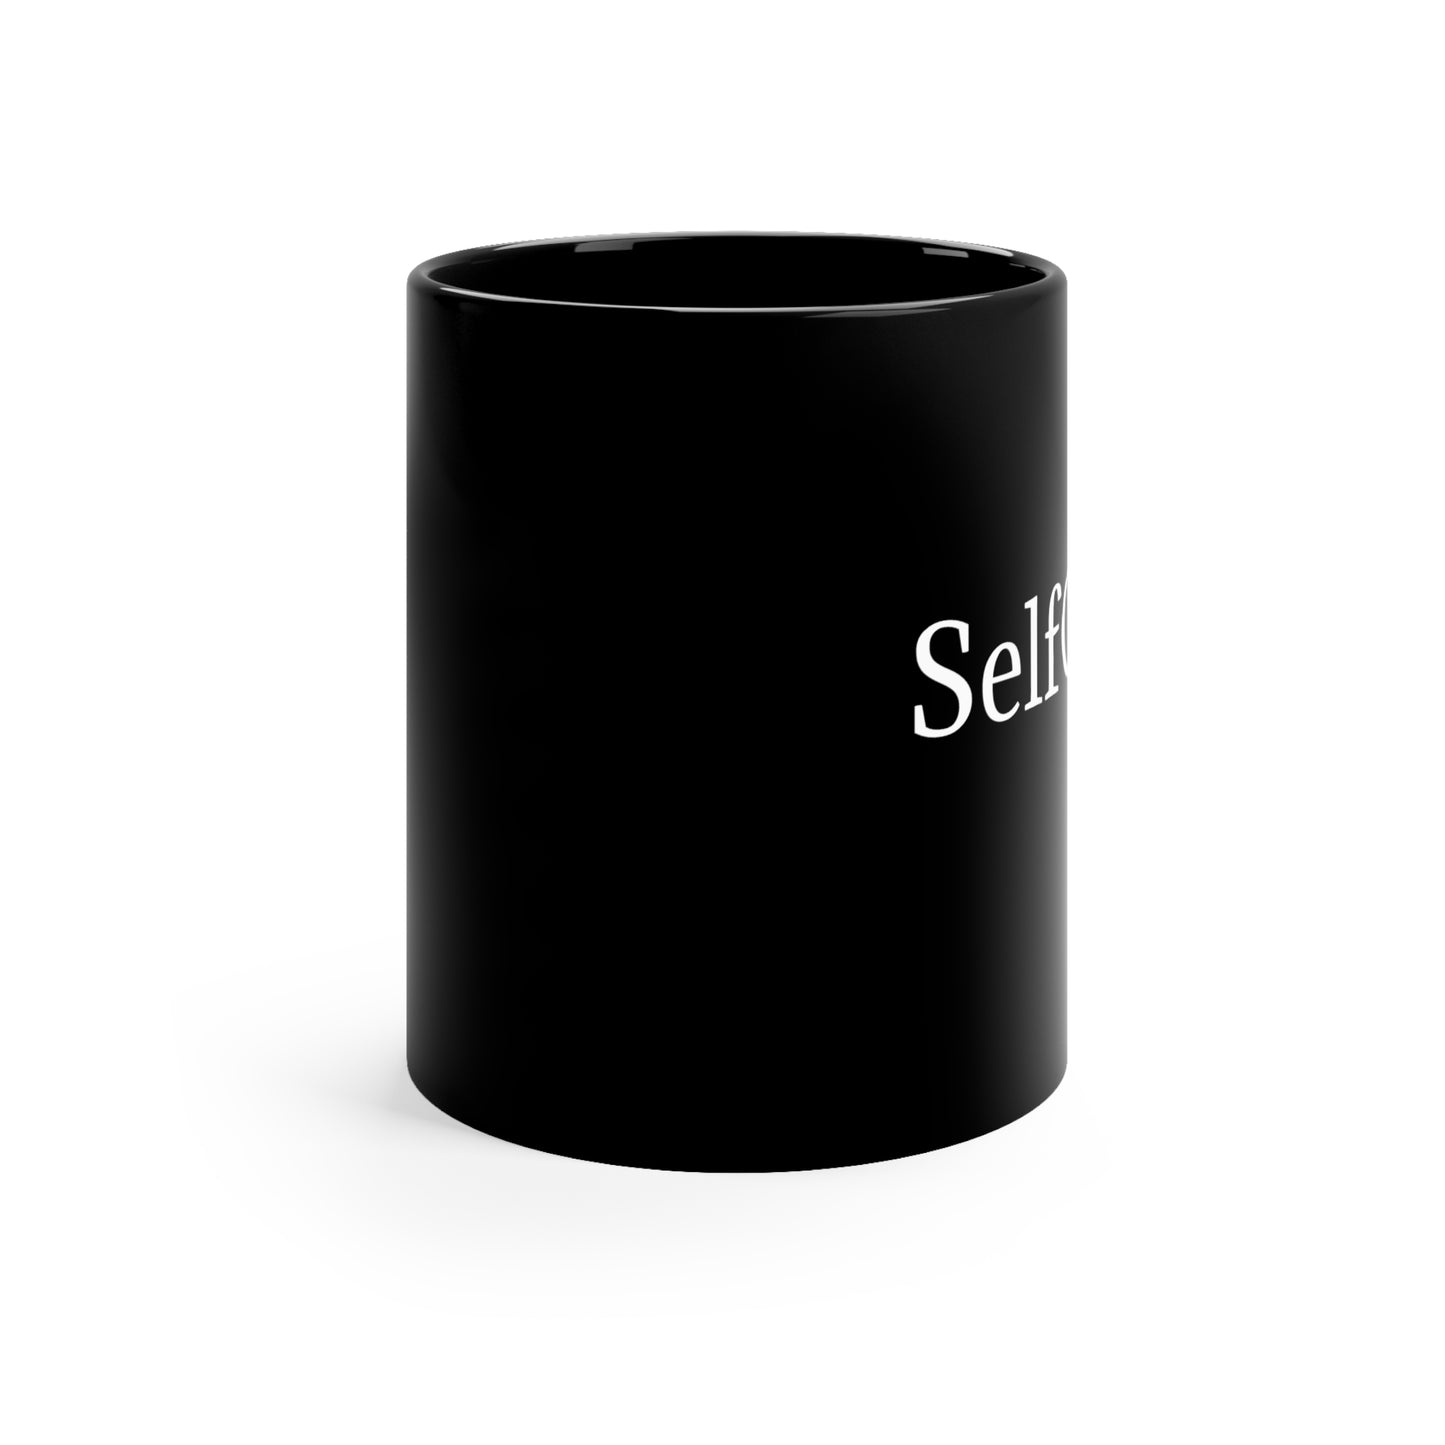 SelfcCare Mug Inspirational Mug Ceramic Coffee Mug SelfLove 11oz Black Mug